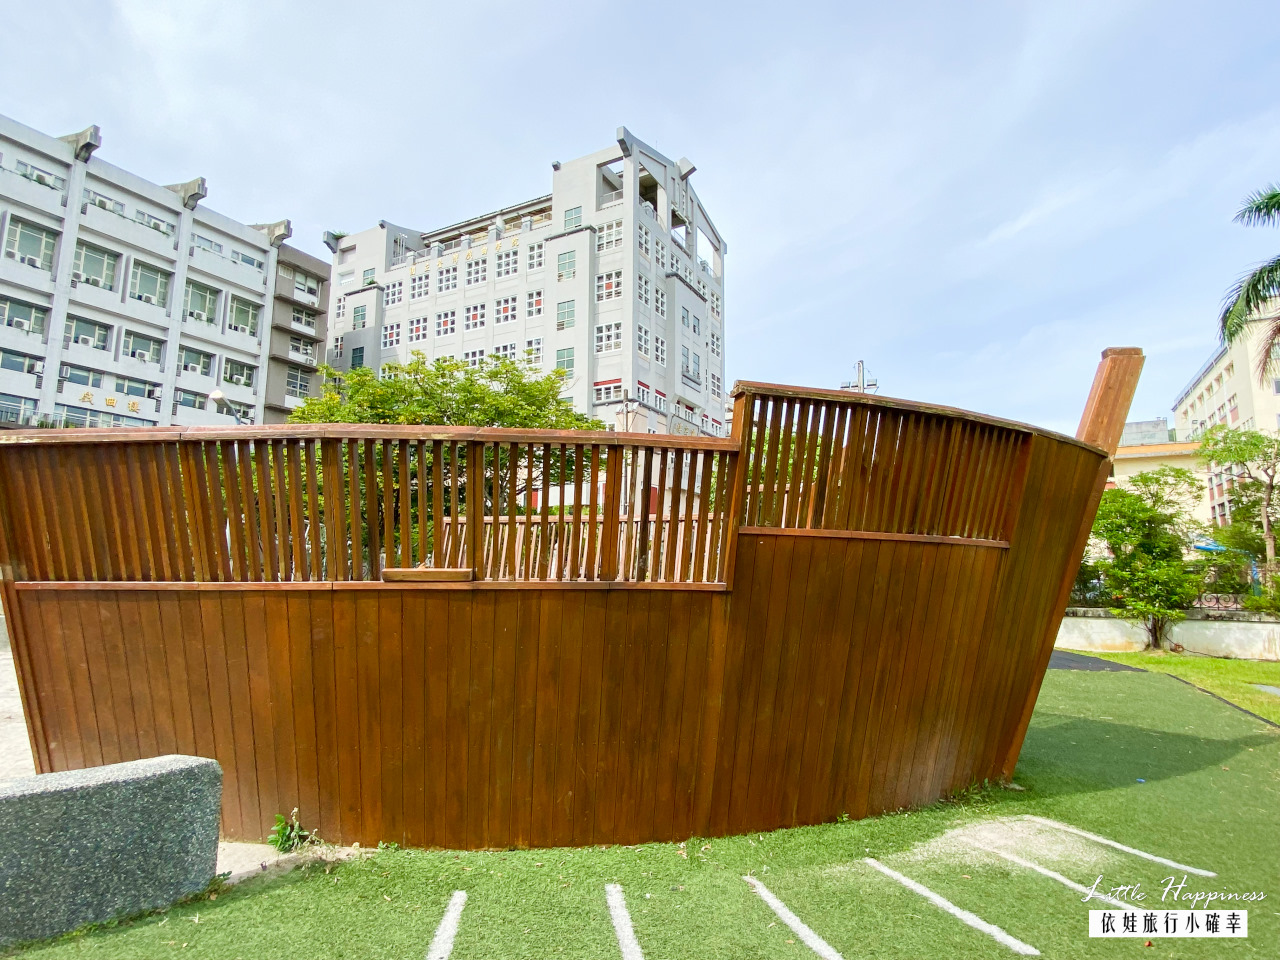 碧湖公園木造巨型海盜船玩沙真好玩!台北市特色共融式兒童遊戲場，搭捷運就能到，還可以散步賞湖了解生態